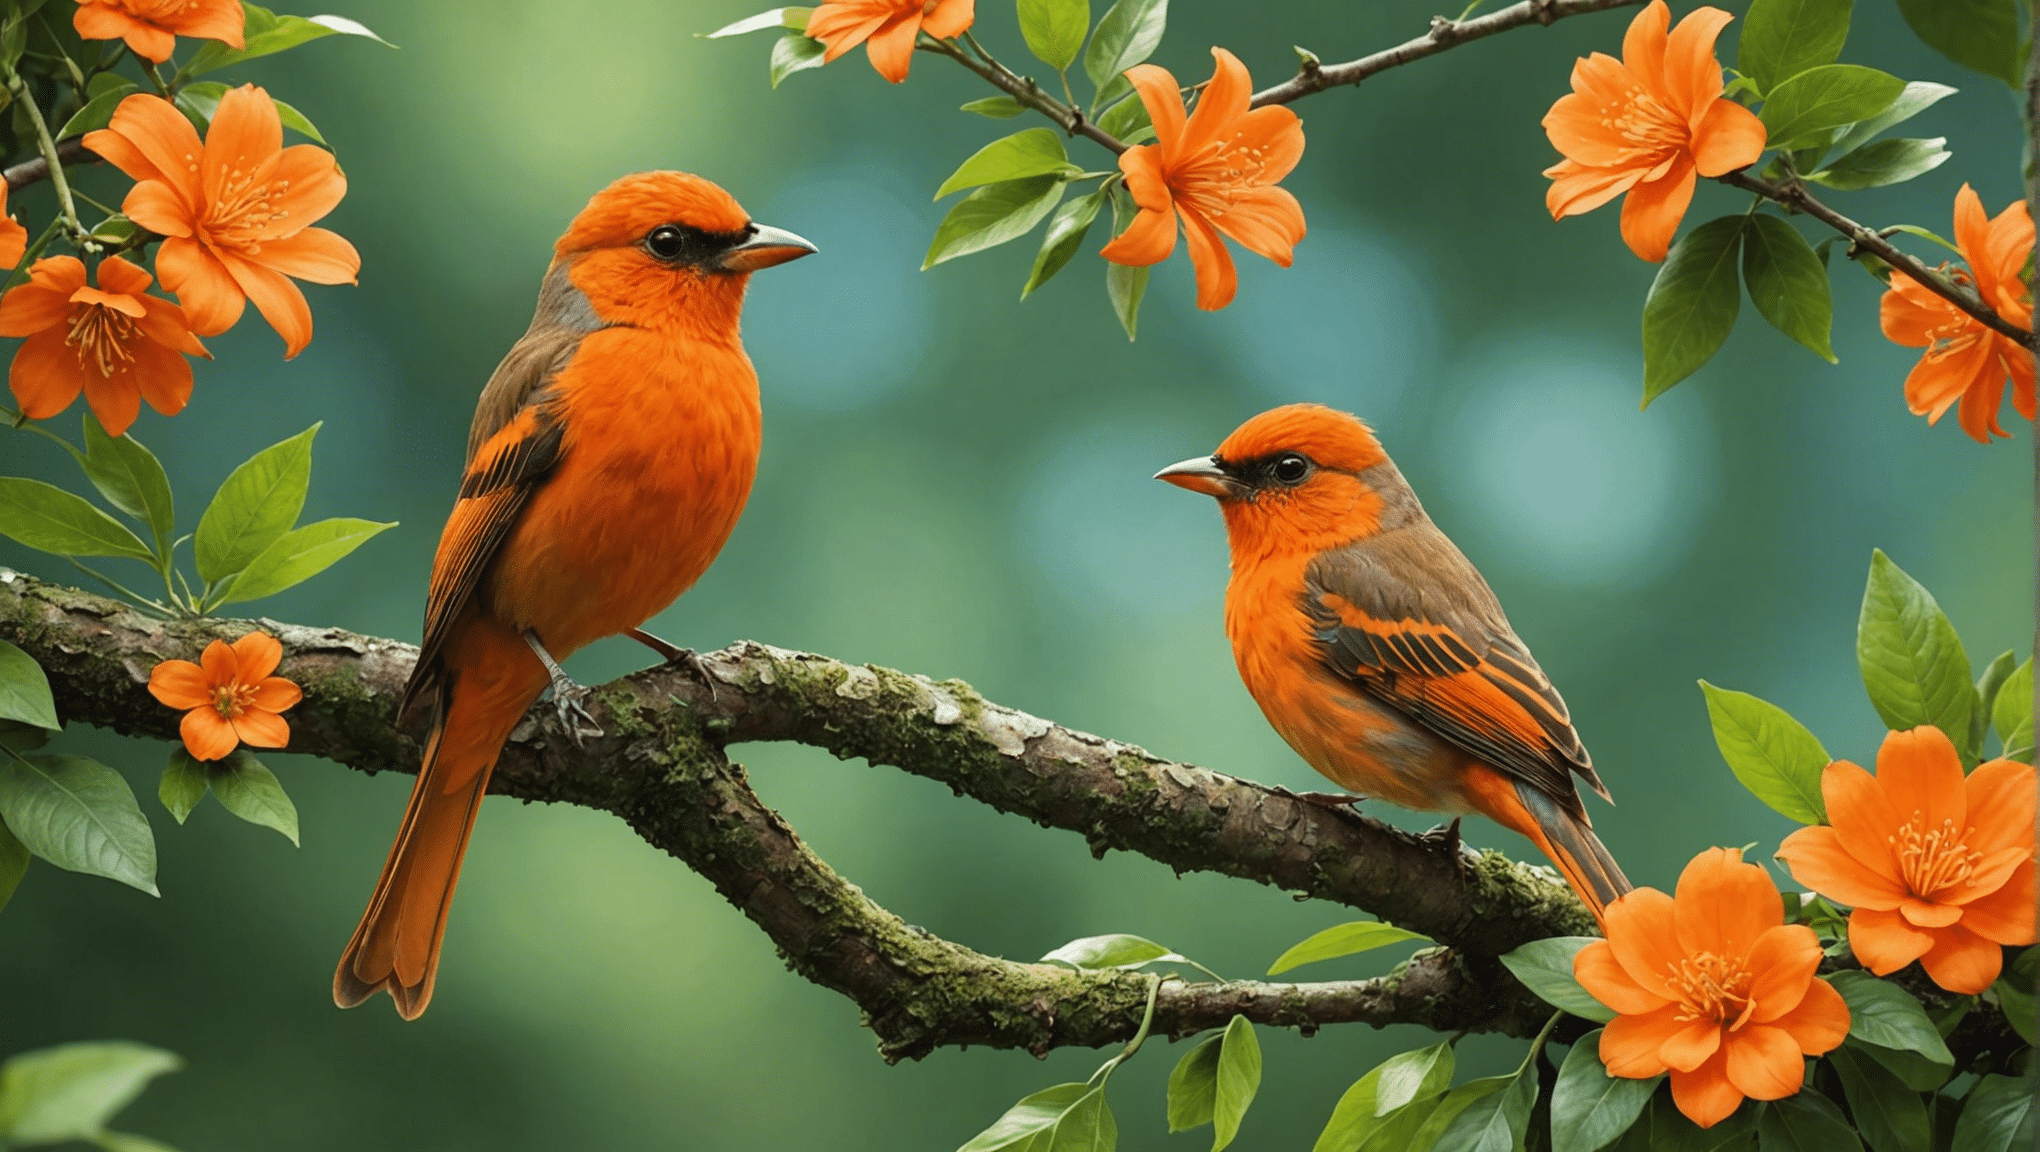 オレンジ色の鳥についての真実を発見してください。オレンジ色の鳥は実在するのか、それとも単なる神話なのか? 事実を知り、オレンジ色の鳥の謎の背後にある現実を解明してください。